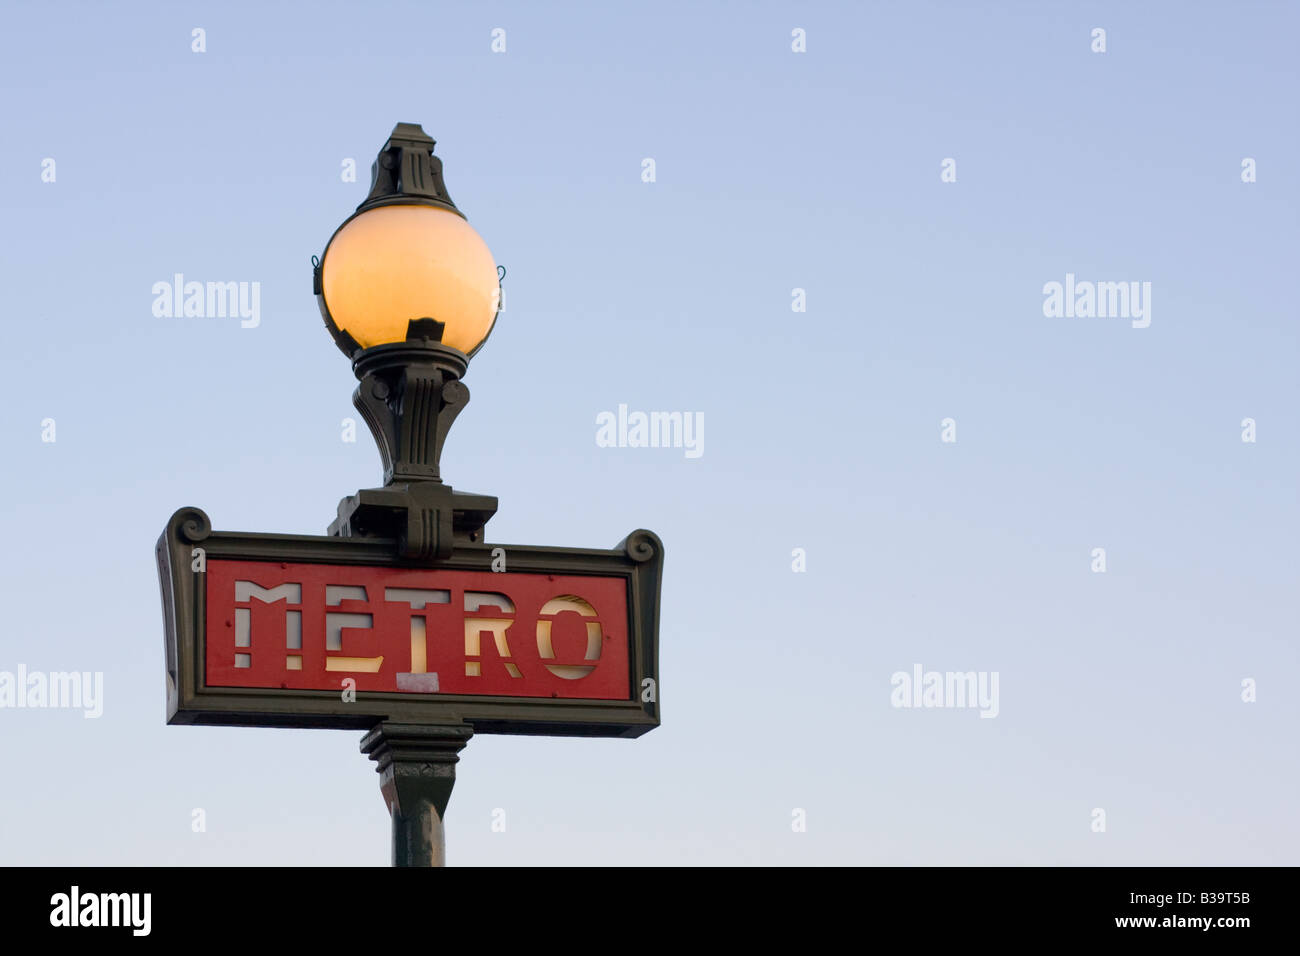 Un éclairage magnifique signe métro Parisien dans le style art nouveau tourné au crépuscule contre un ciel bleu clair et brillant de l'intérieur. Banque D'Images